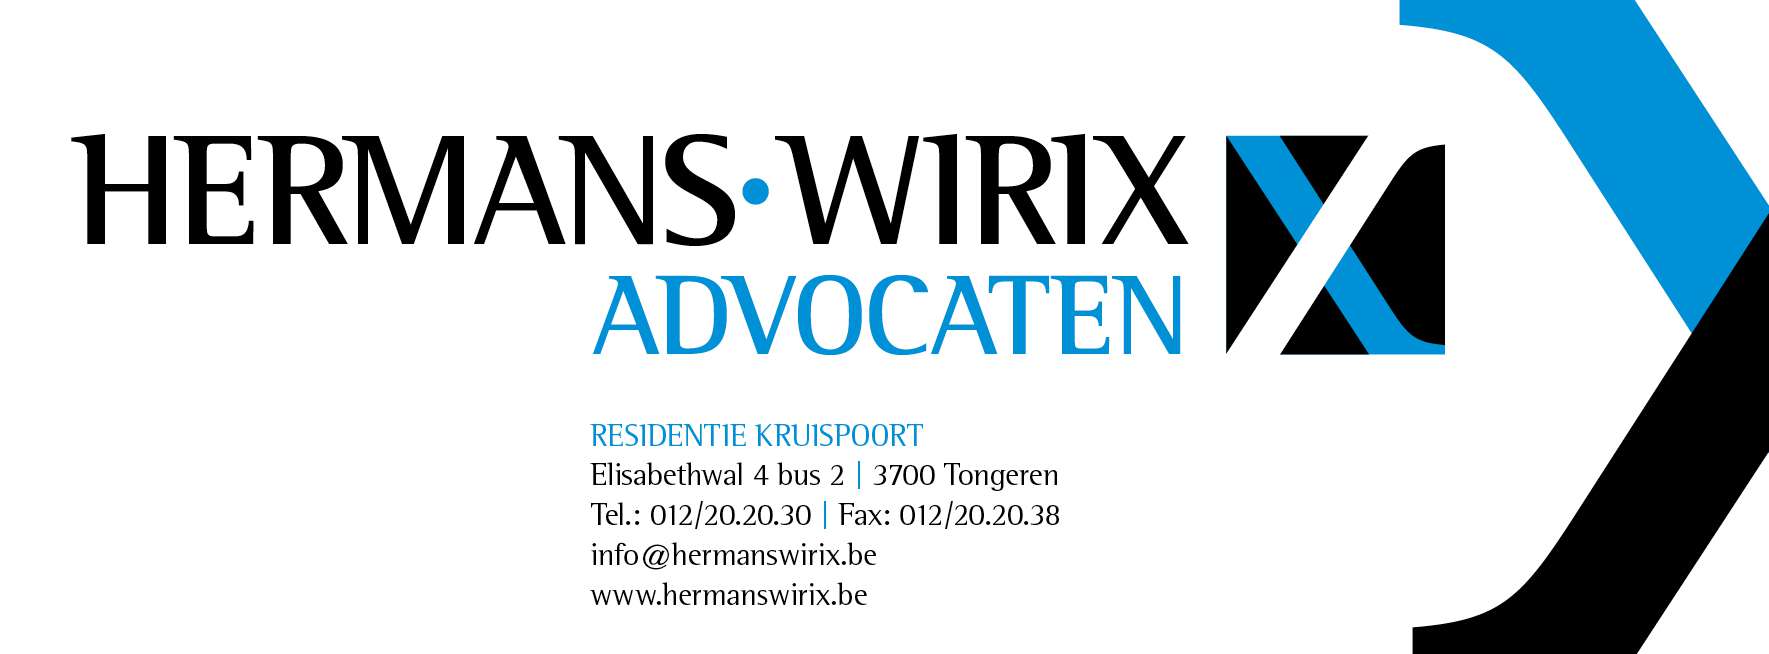 advocaten Tongeren Hermans-Wirix advocaten